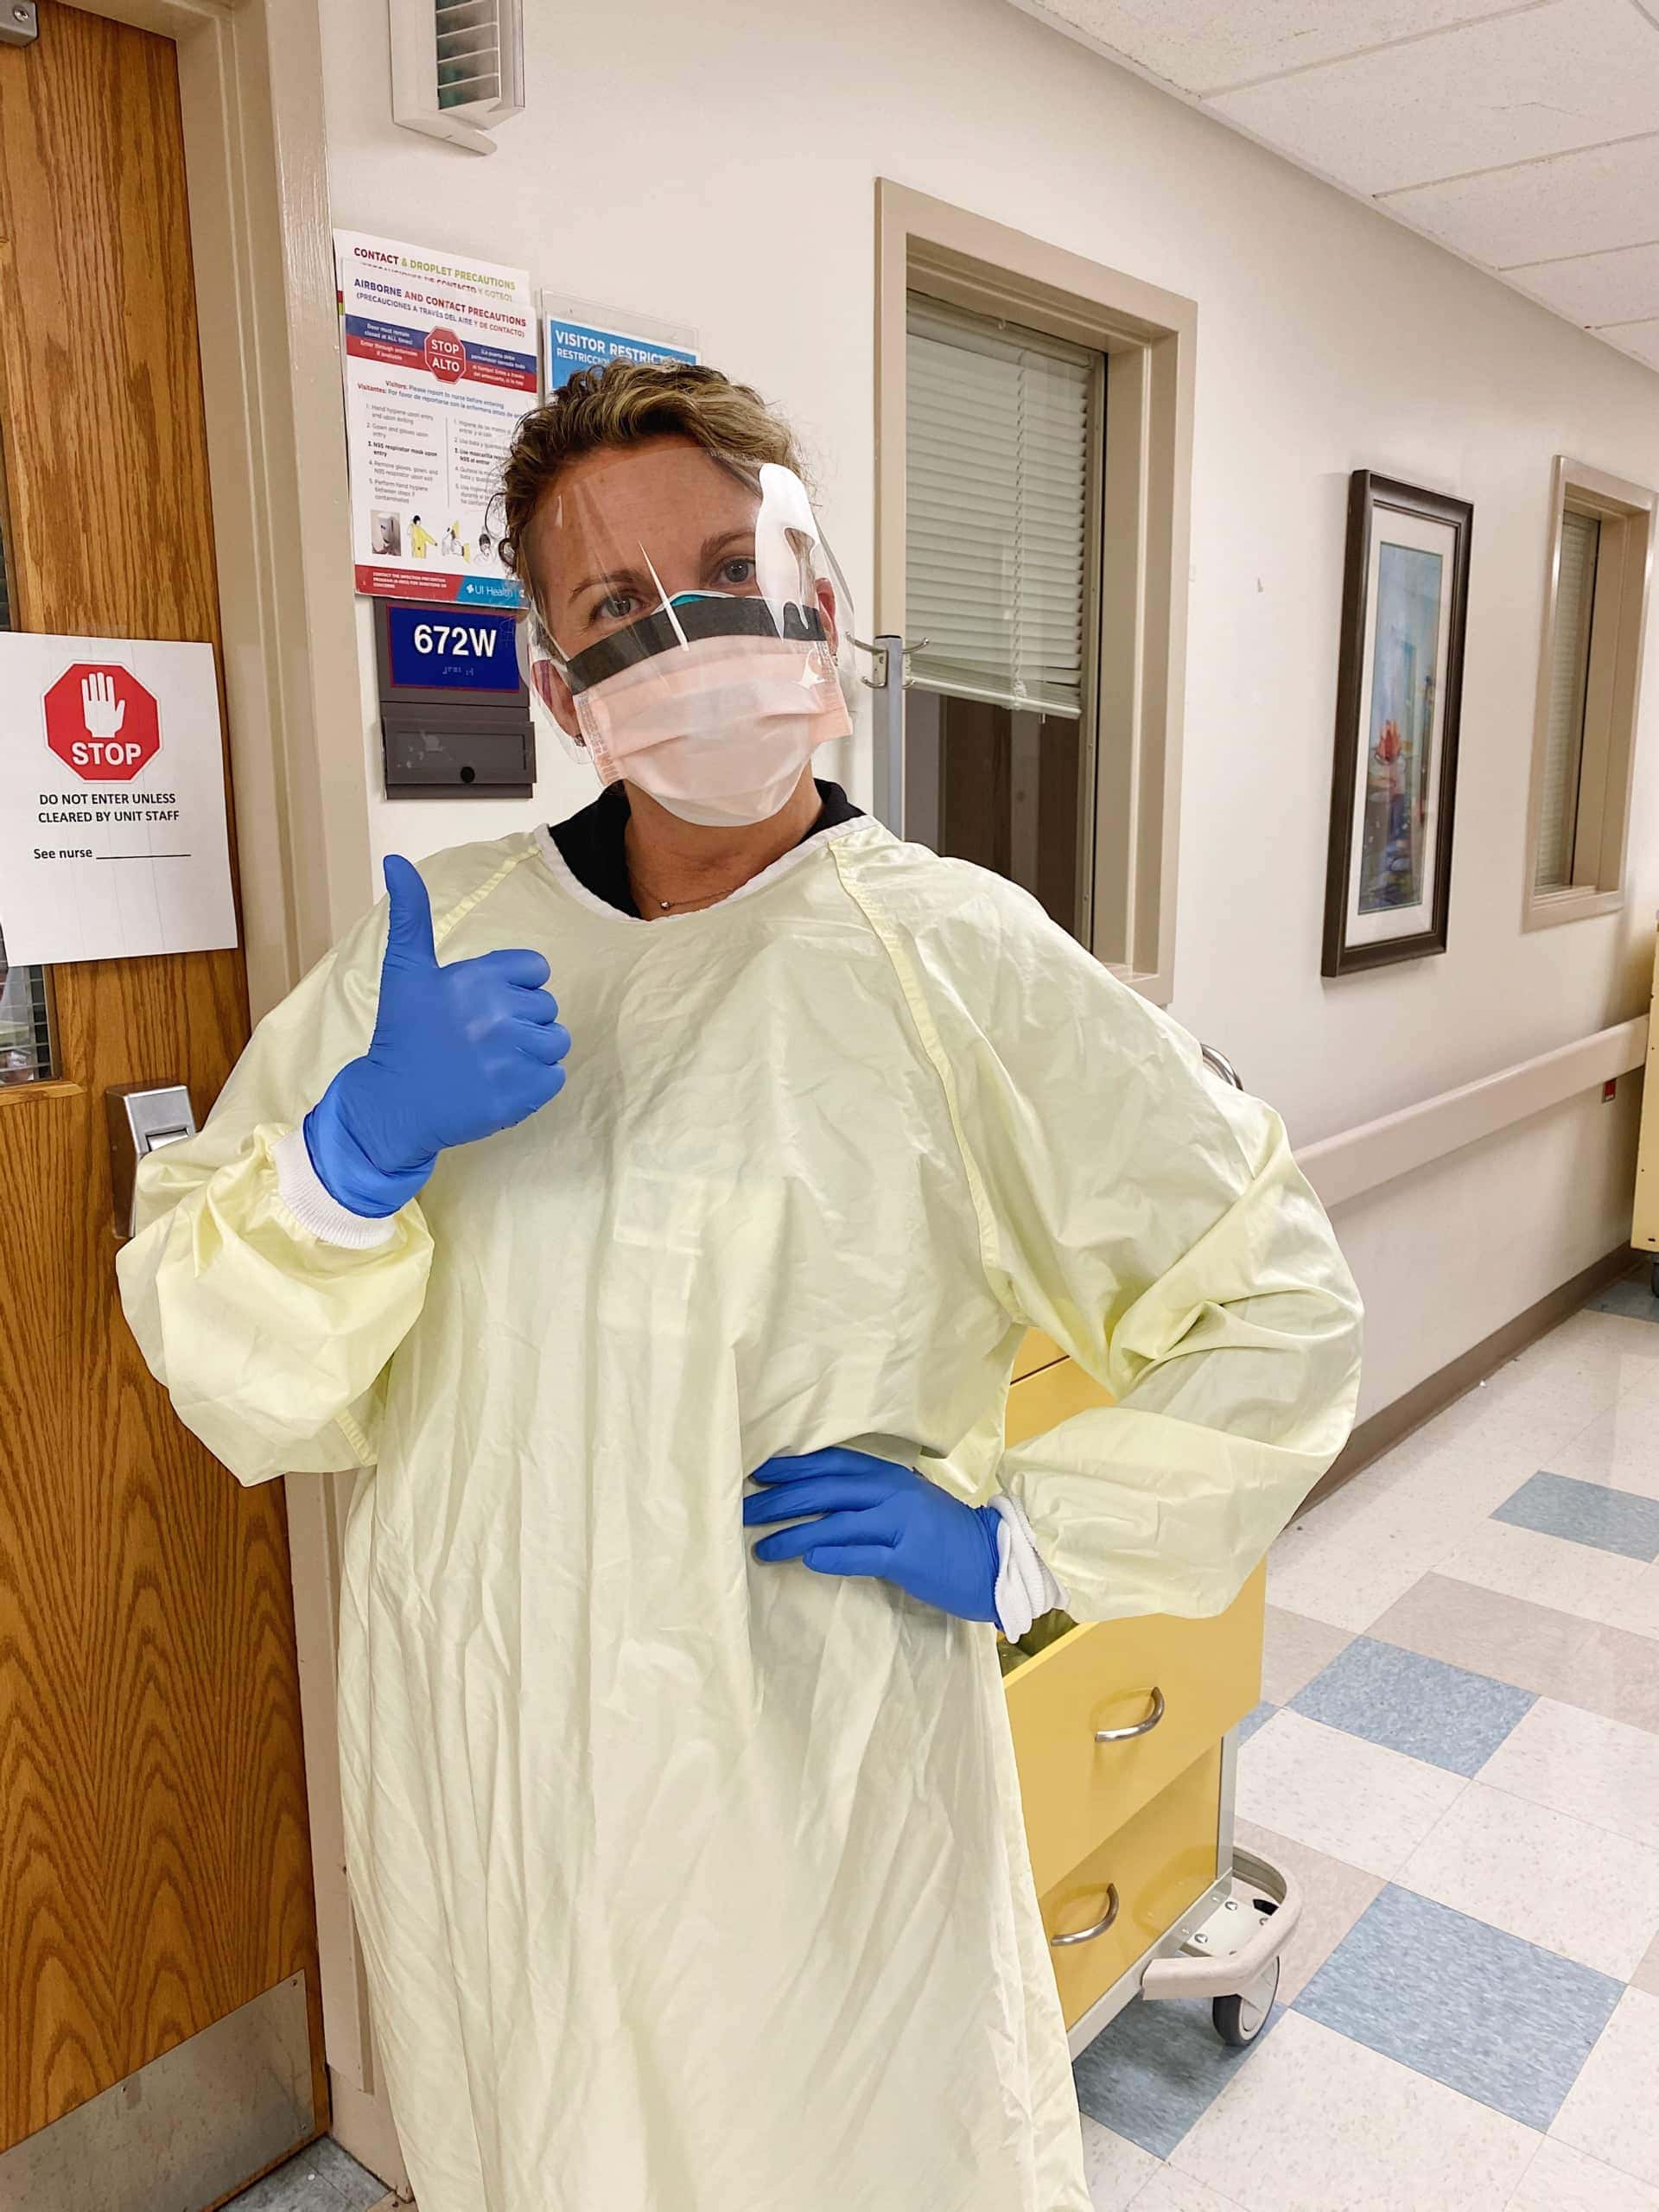 Liz working in the ICU during the coronavirus pandemic